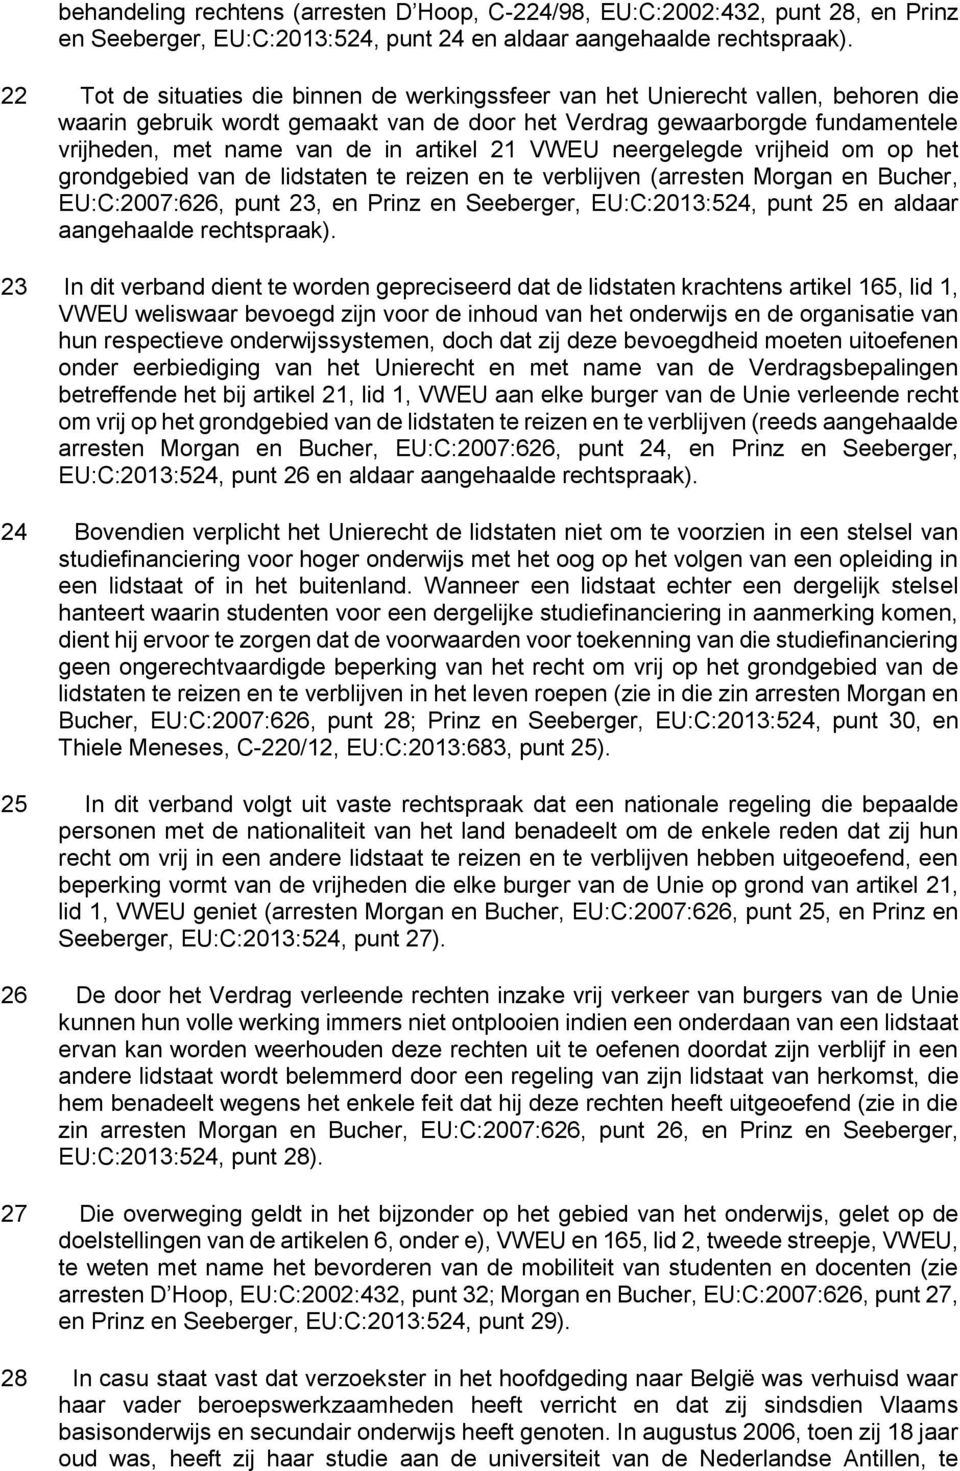 artikel 21 VWEU neergelegde vrijheid om op het grondgebied van de lidstaten te reizen en te verblijven (arresten Morgan en Bucher, EU:C:2007:626, punt 23, en Prinz en Seeberger, EU:C:2013:524, punt